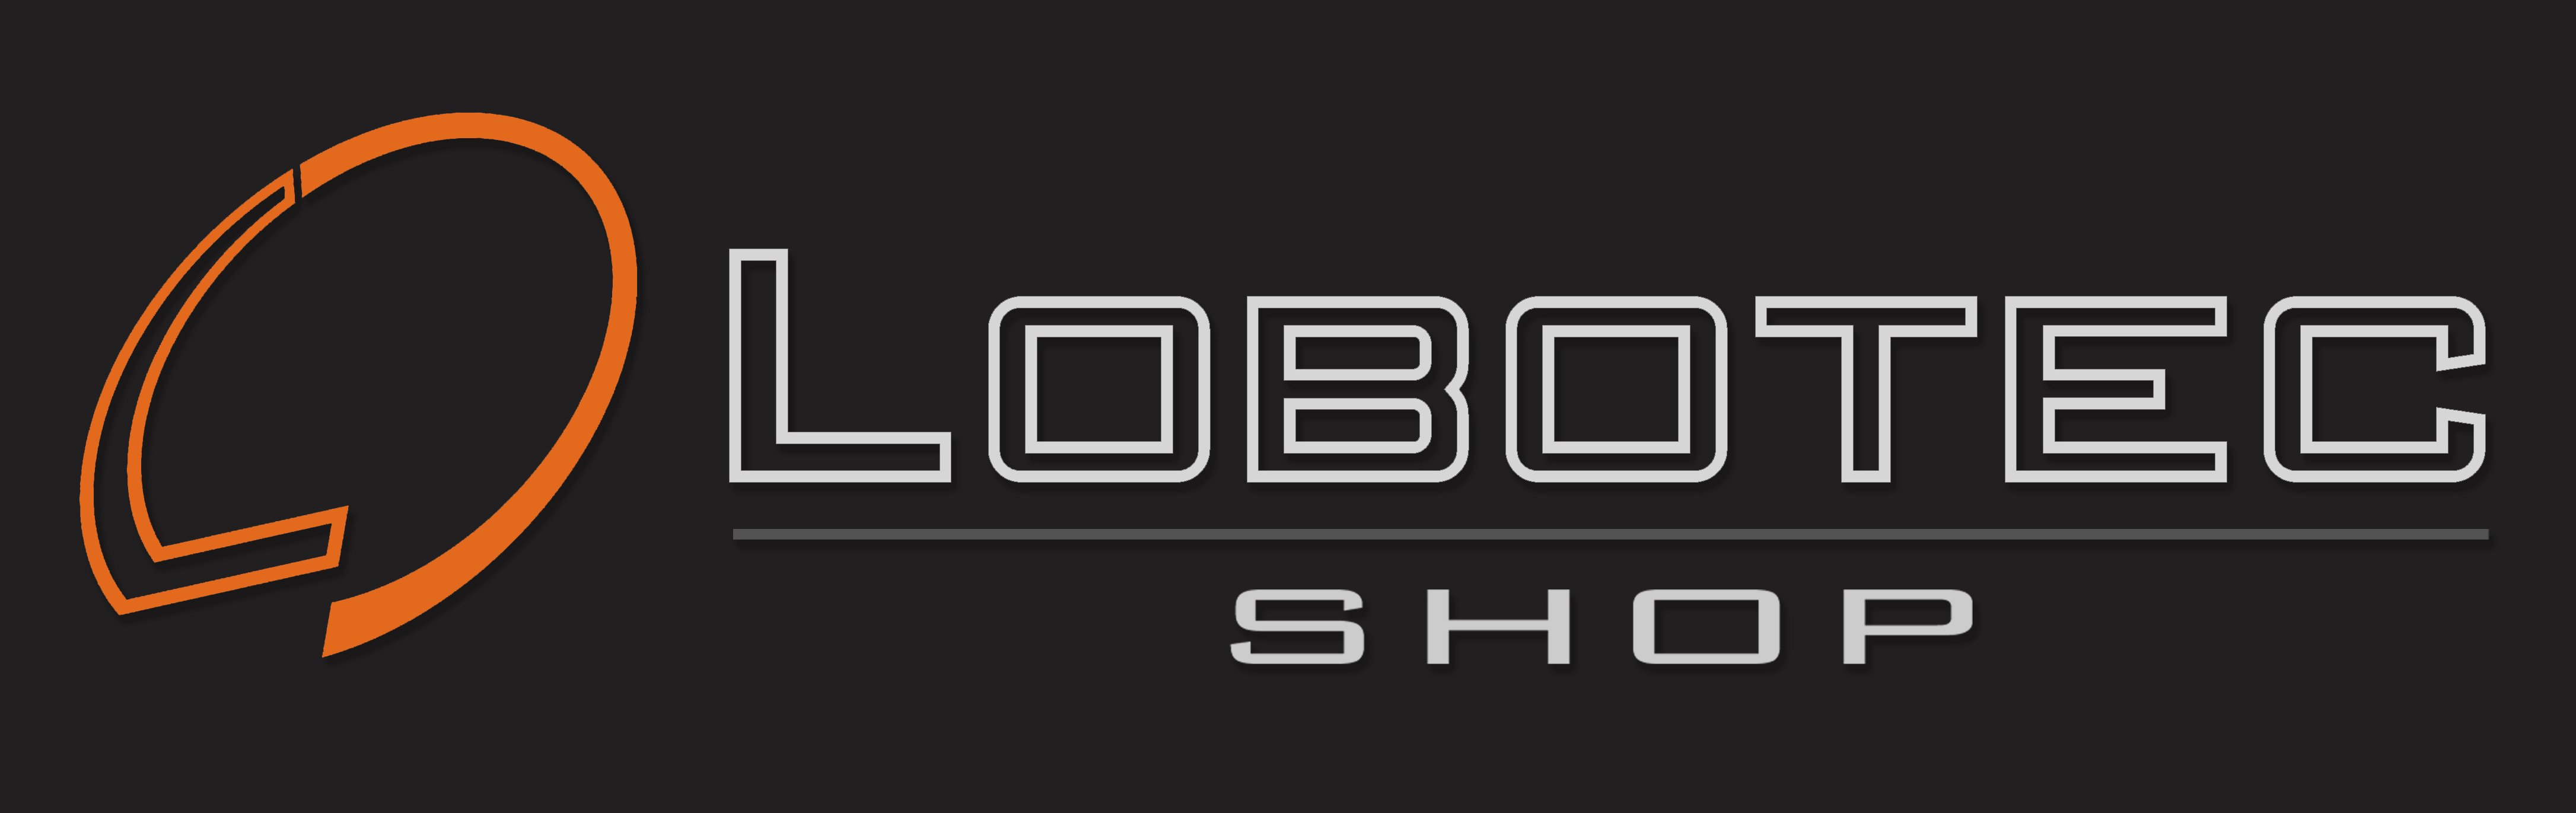 LOBOTEC - Shop